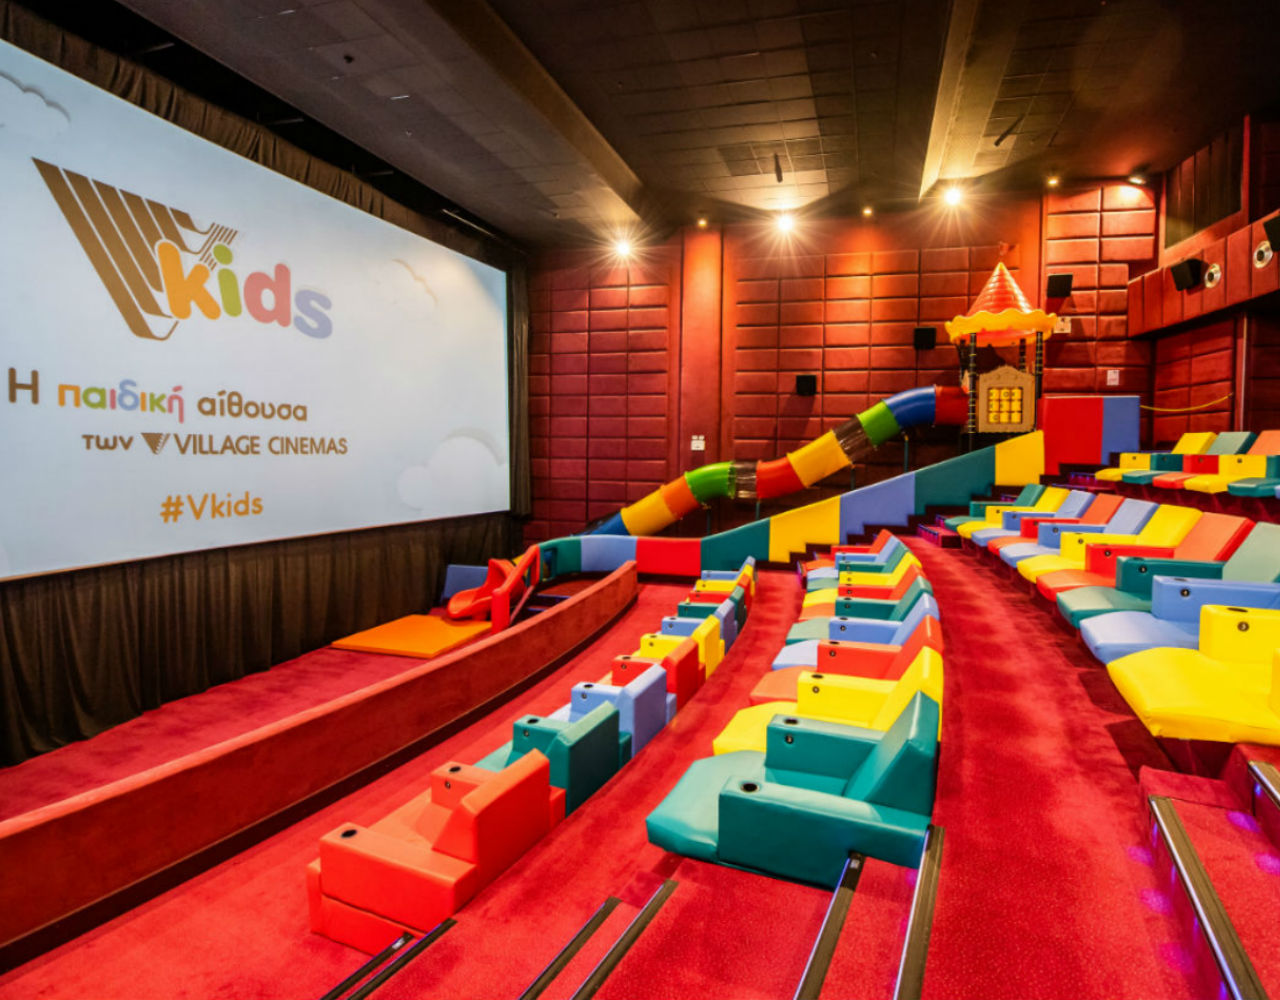 Η ολοκαίνουρια παιδική αίθουσα Vkids των Village Cinemas Φαλήρου άνοιξε και μας περιμένει